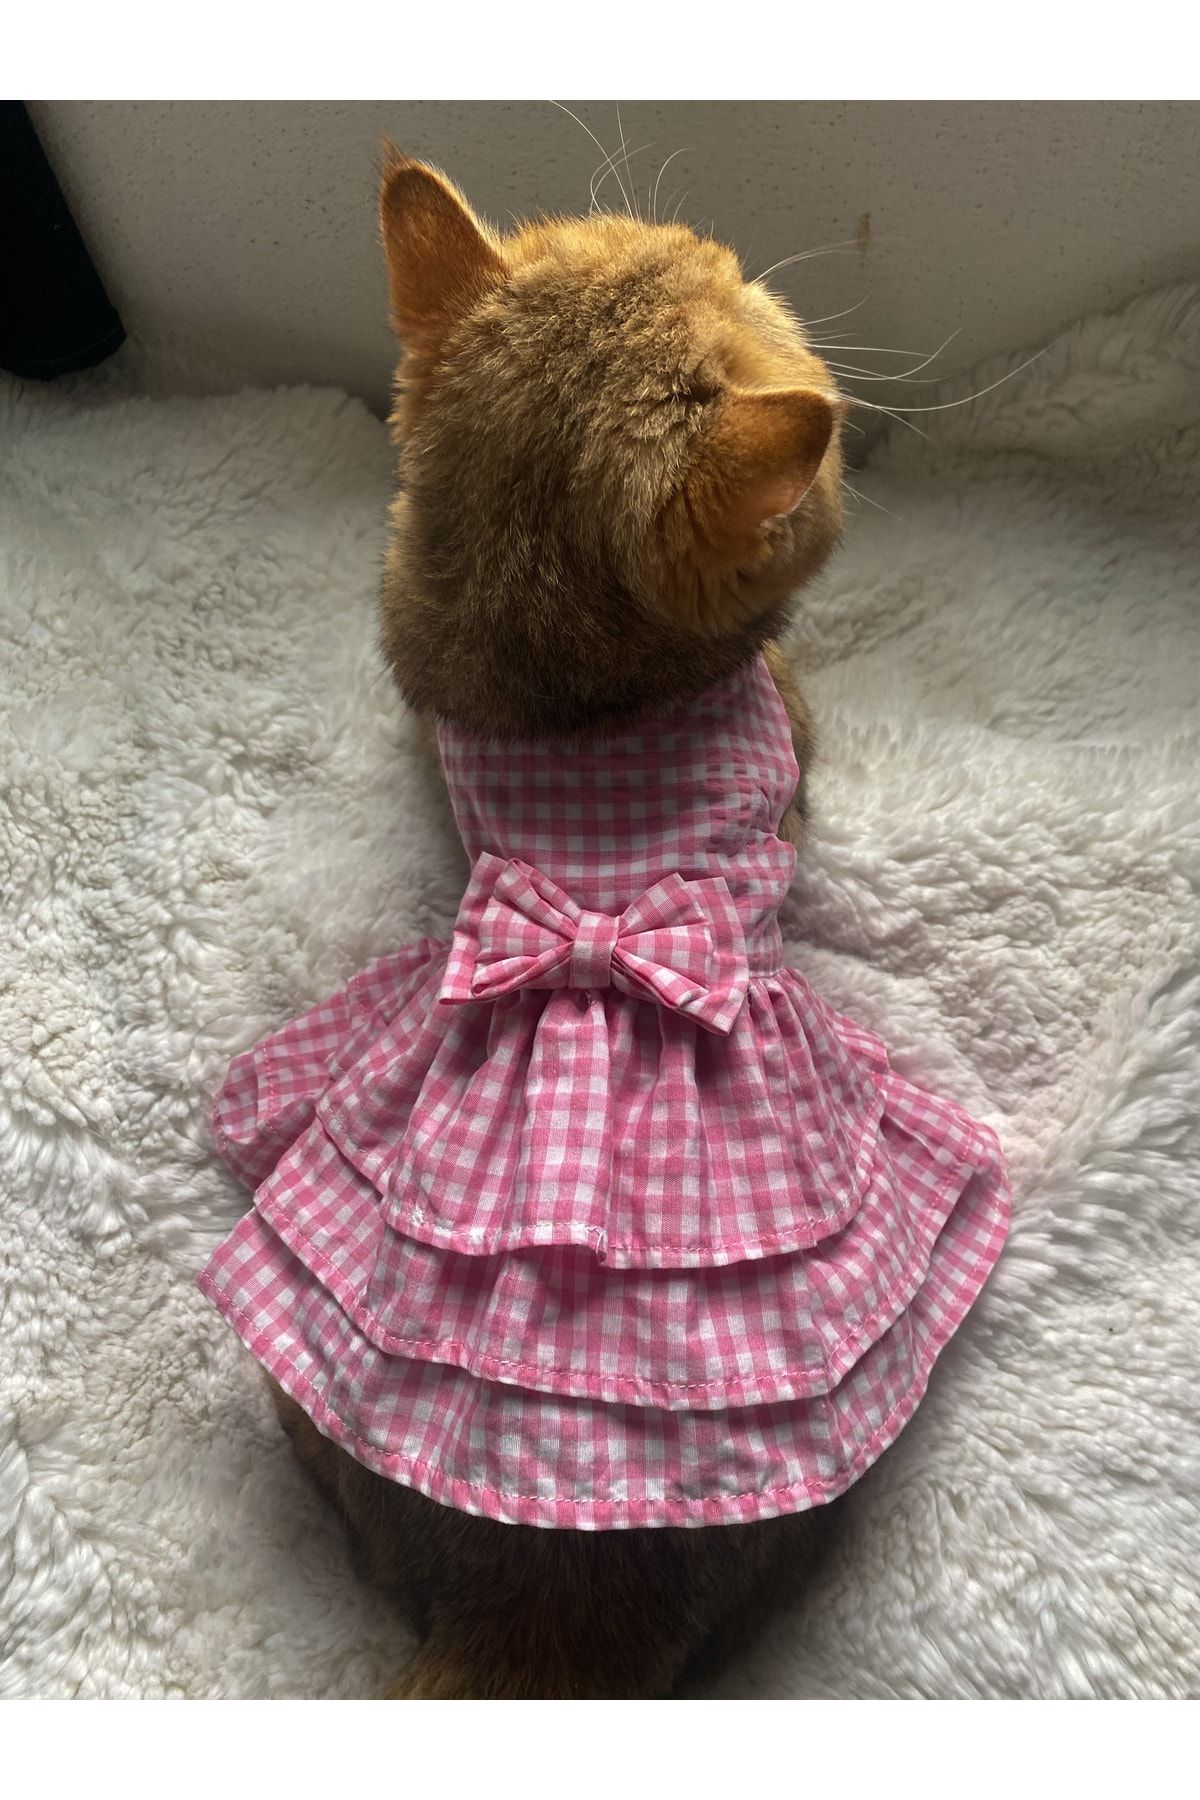 leonapetstore Bonita Pembe Kedi Köpek Kıyafeti Elbisesi (cırt Cırtlıdır)